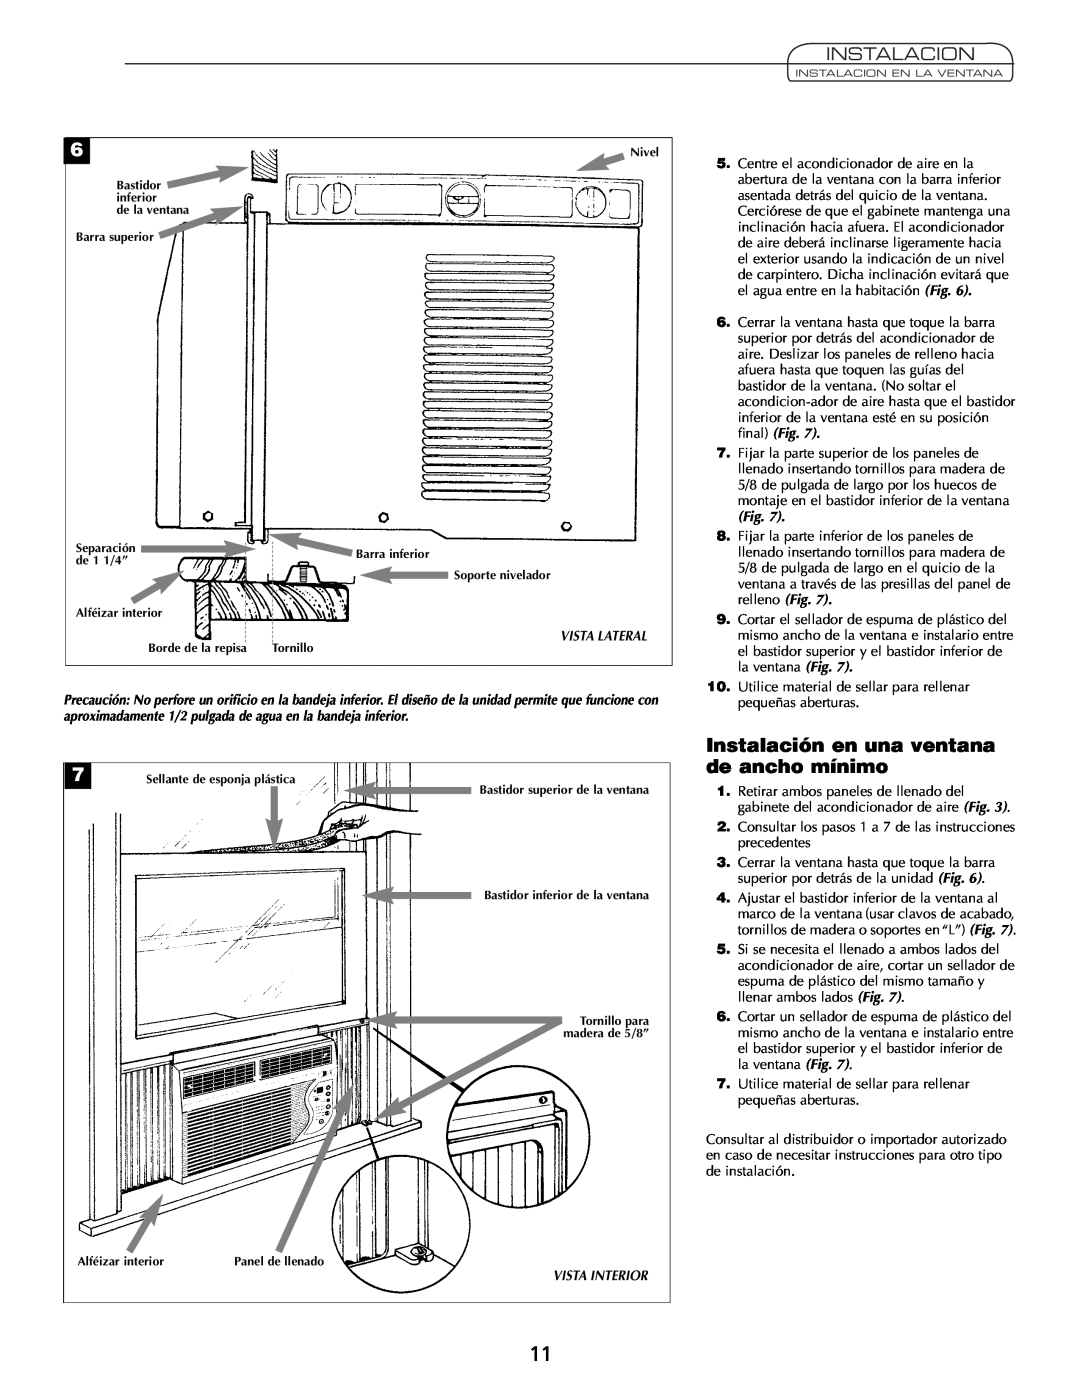 Heat Controller Comfort Air Instalación en una ventana de ancho mínimo, Instalacion, Vista Interior 